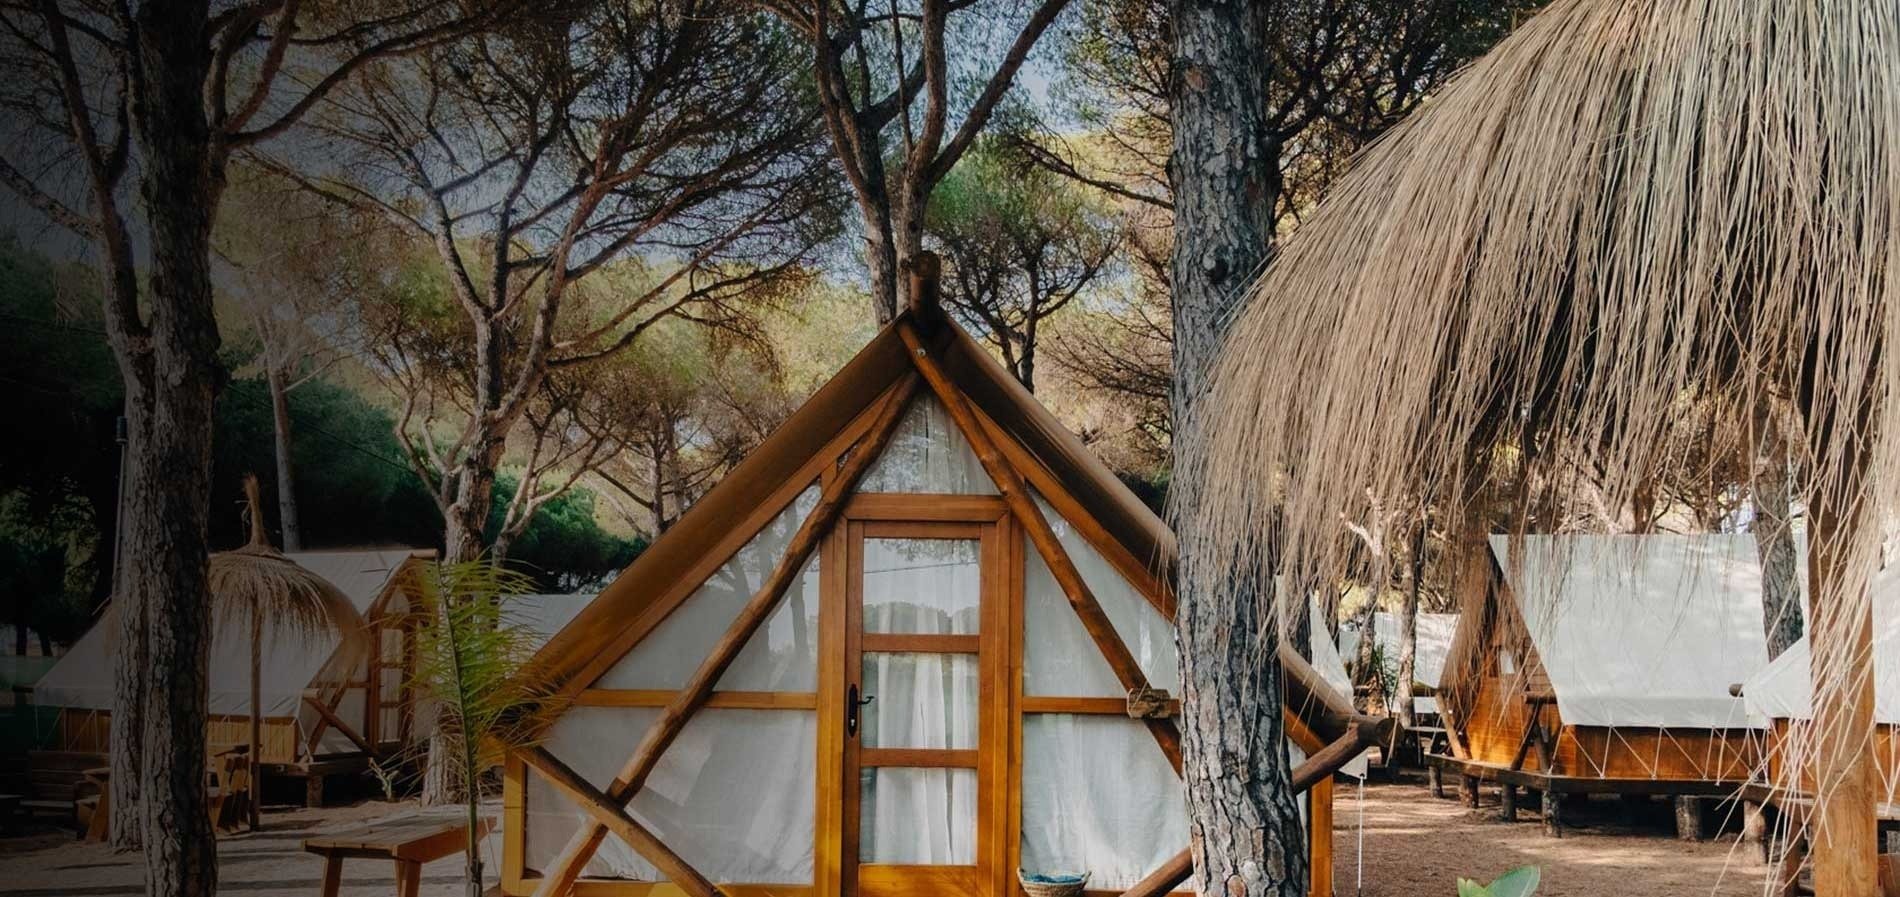 ein dreieckiges Zelt steht mitten in einem Wald